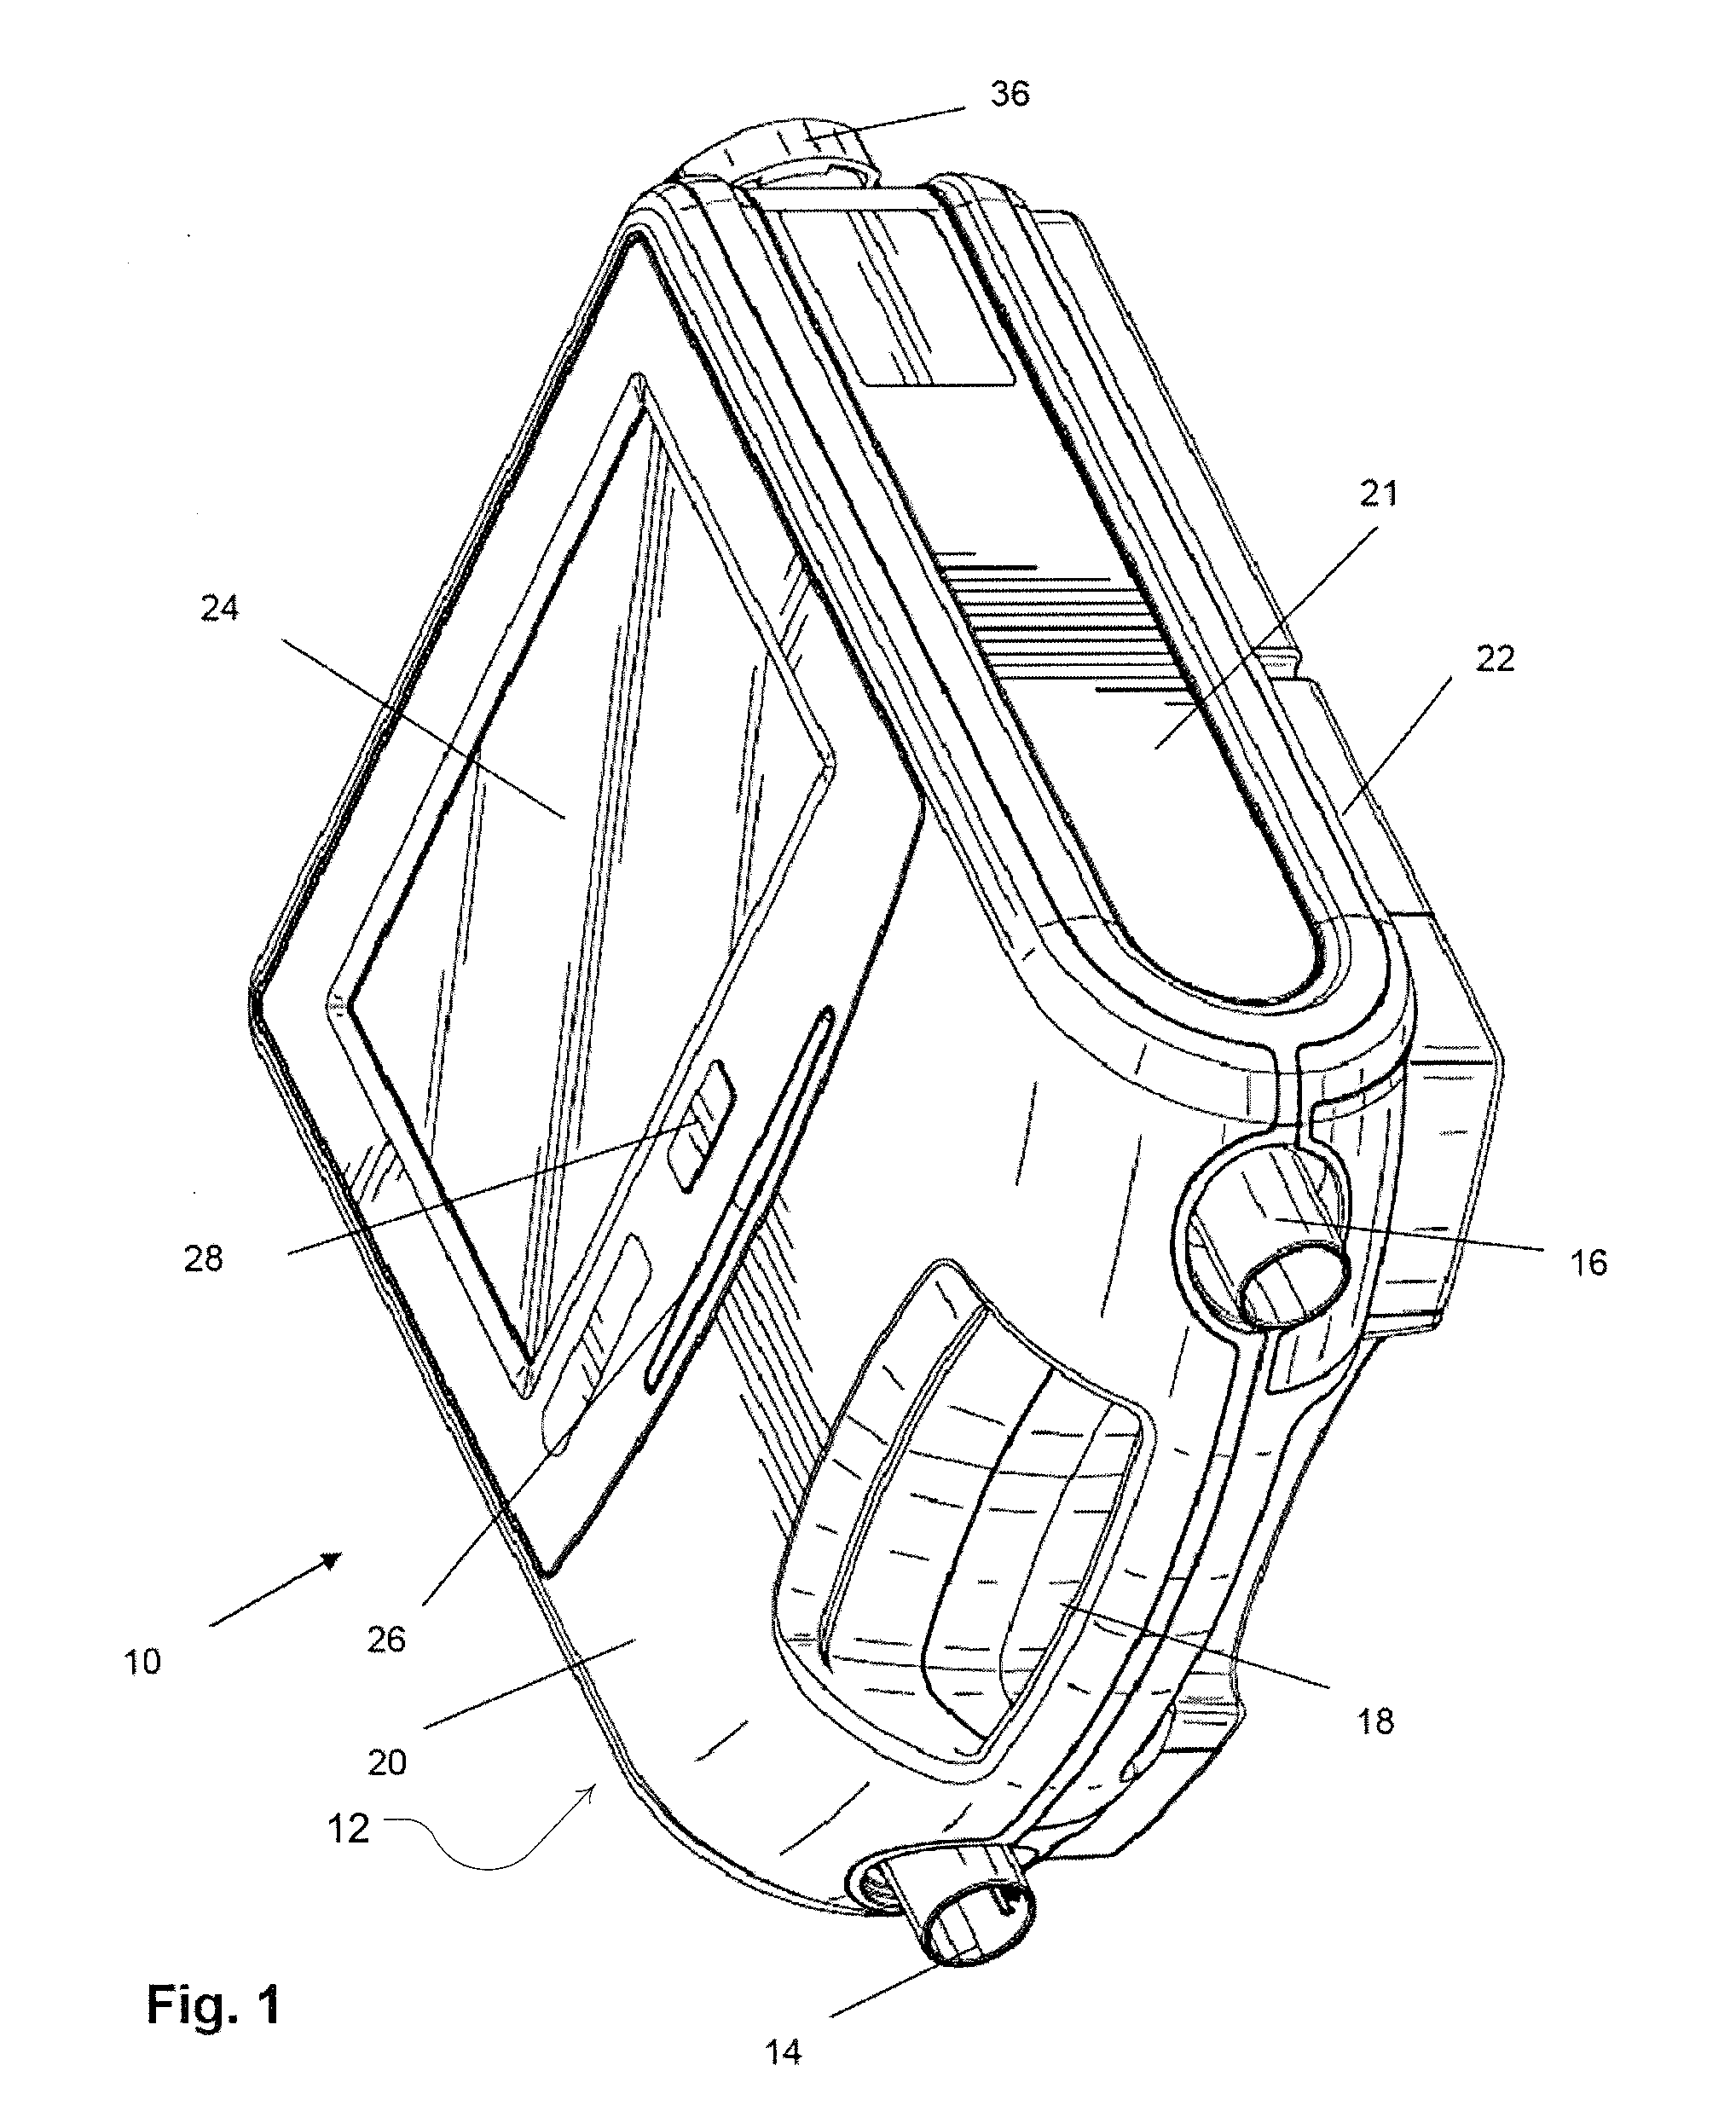 Ventilator apparatus and method